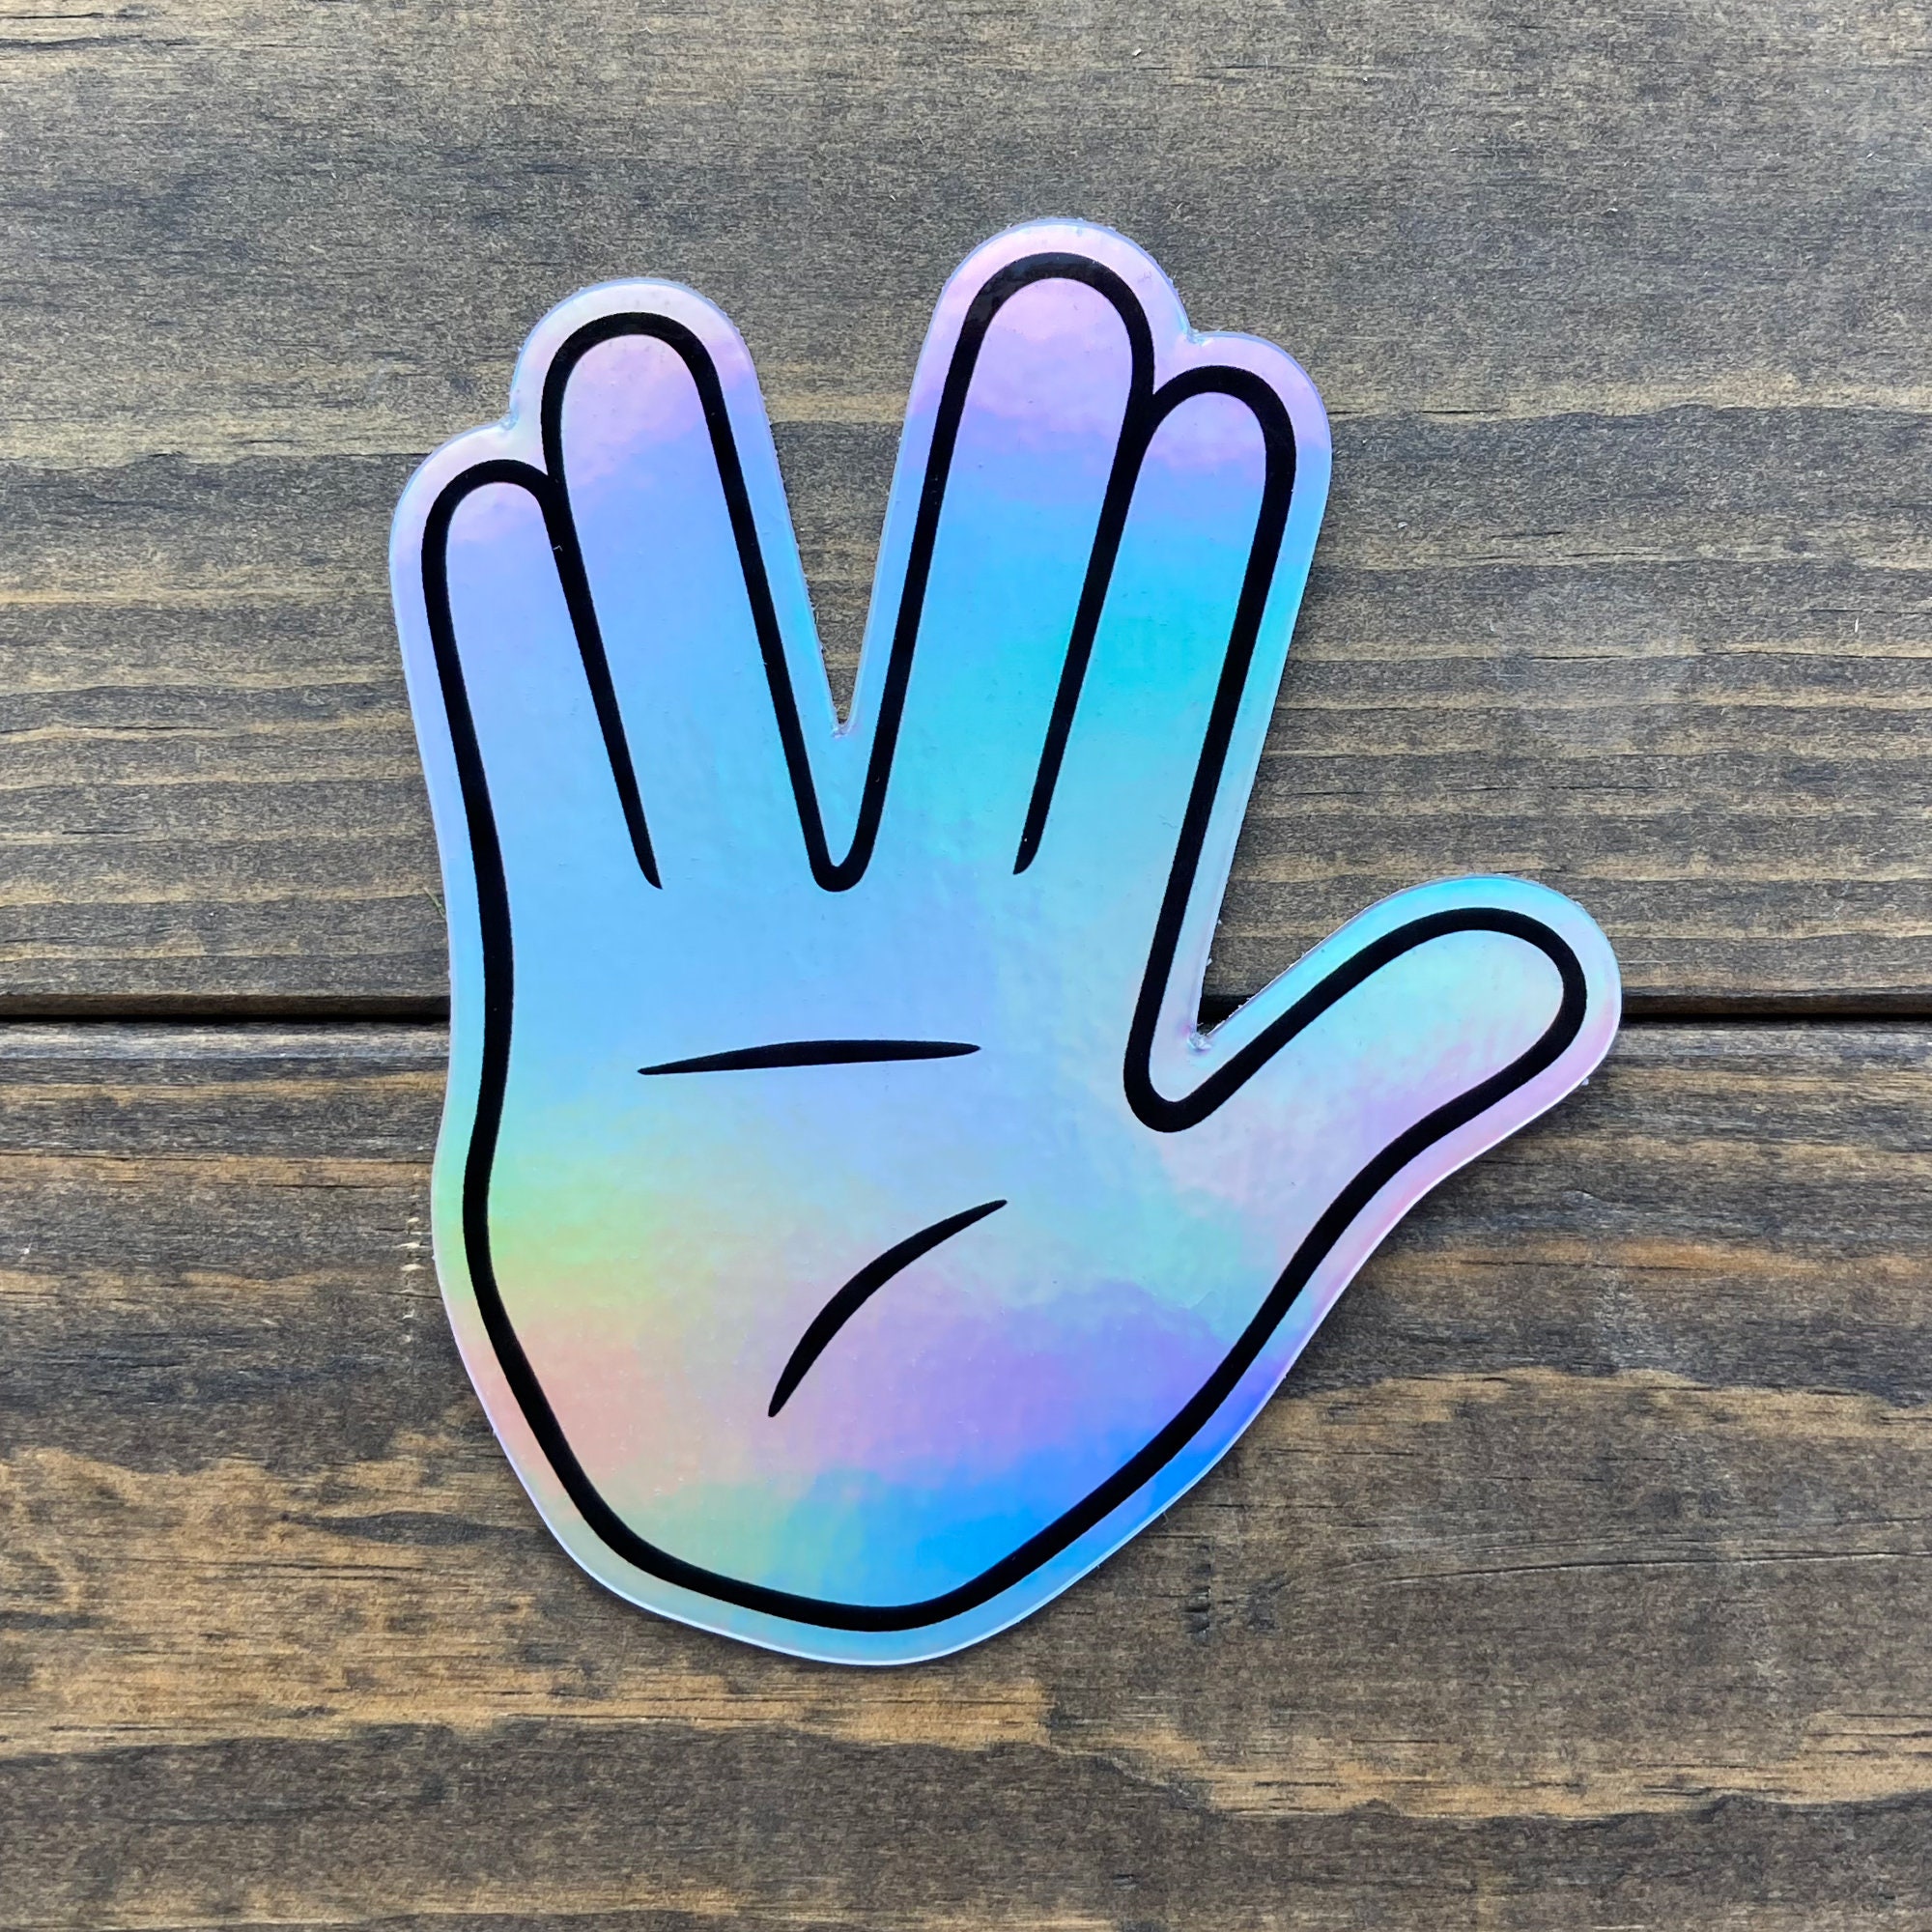 dr spock star trek hand sign